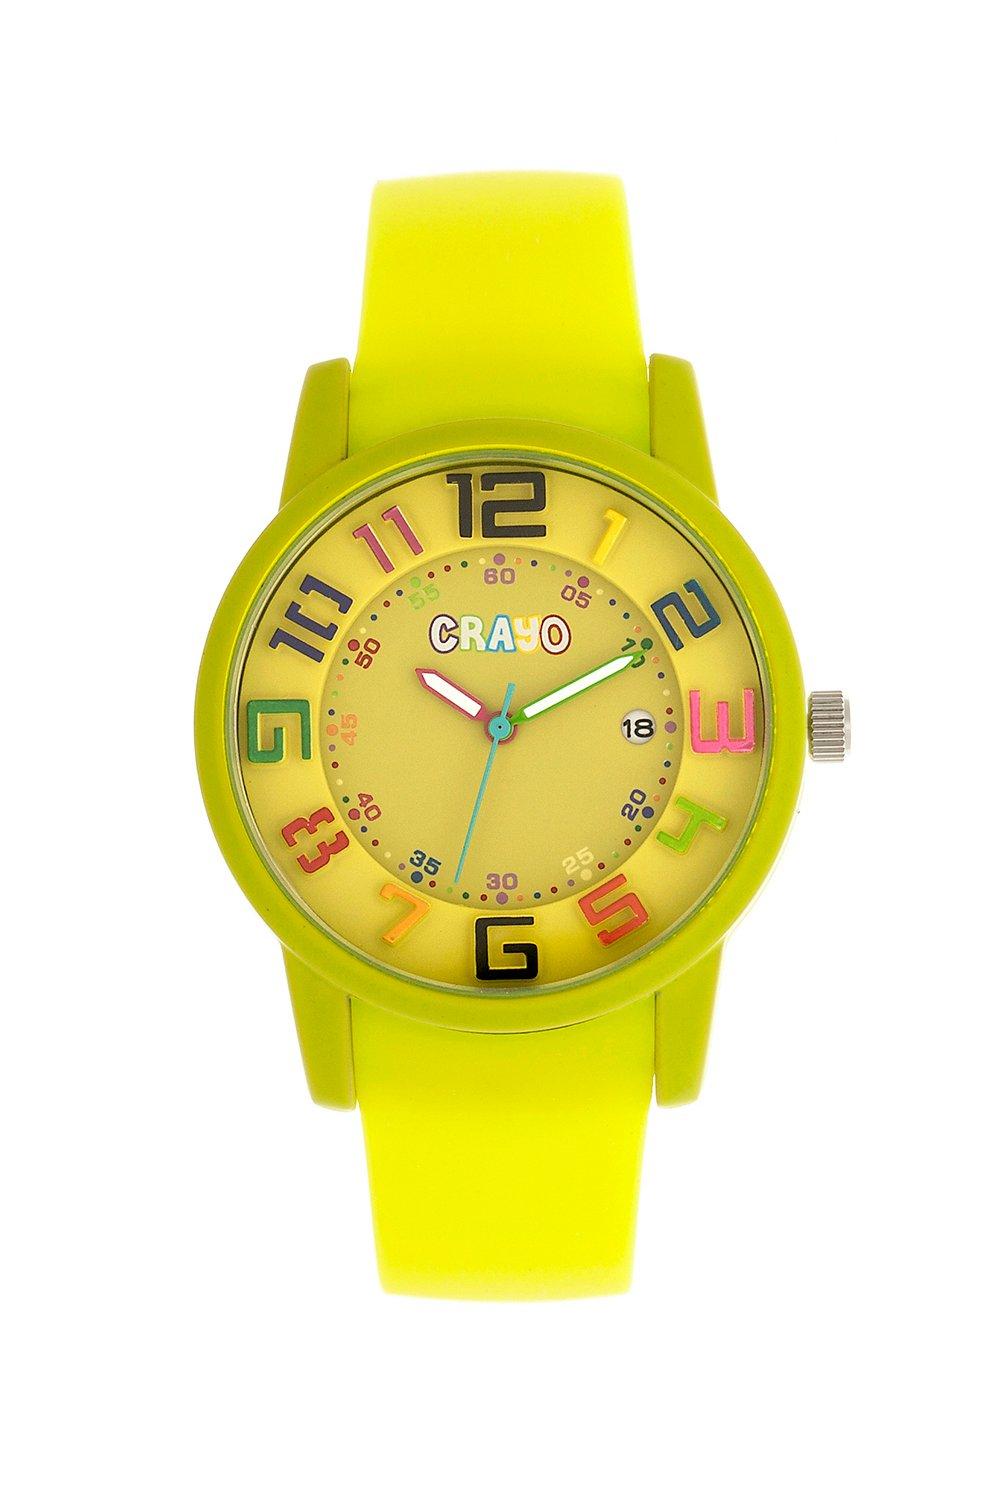 цена Часы унисекс Festival с датой Crayo, желтый